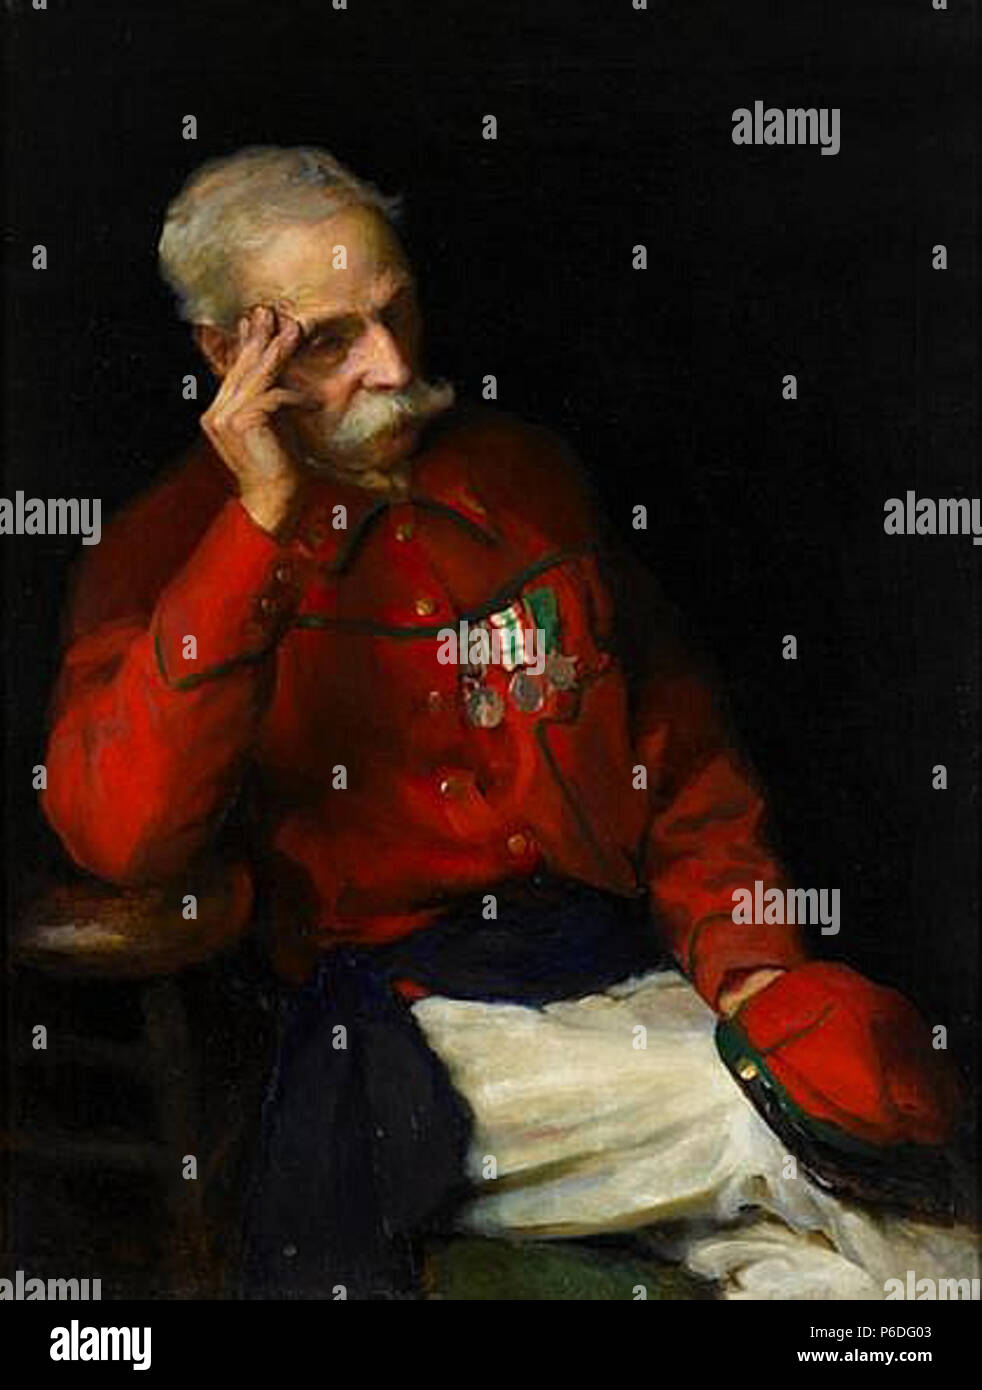 Portrait de Giuseppe Garibaldi, peint par Marion Boyd Allen. Huile sur toile, 41 x 31 in. Date inconnue 49 Garibaldi, par Marion Boyd Allen Banque D'Images